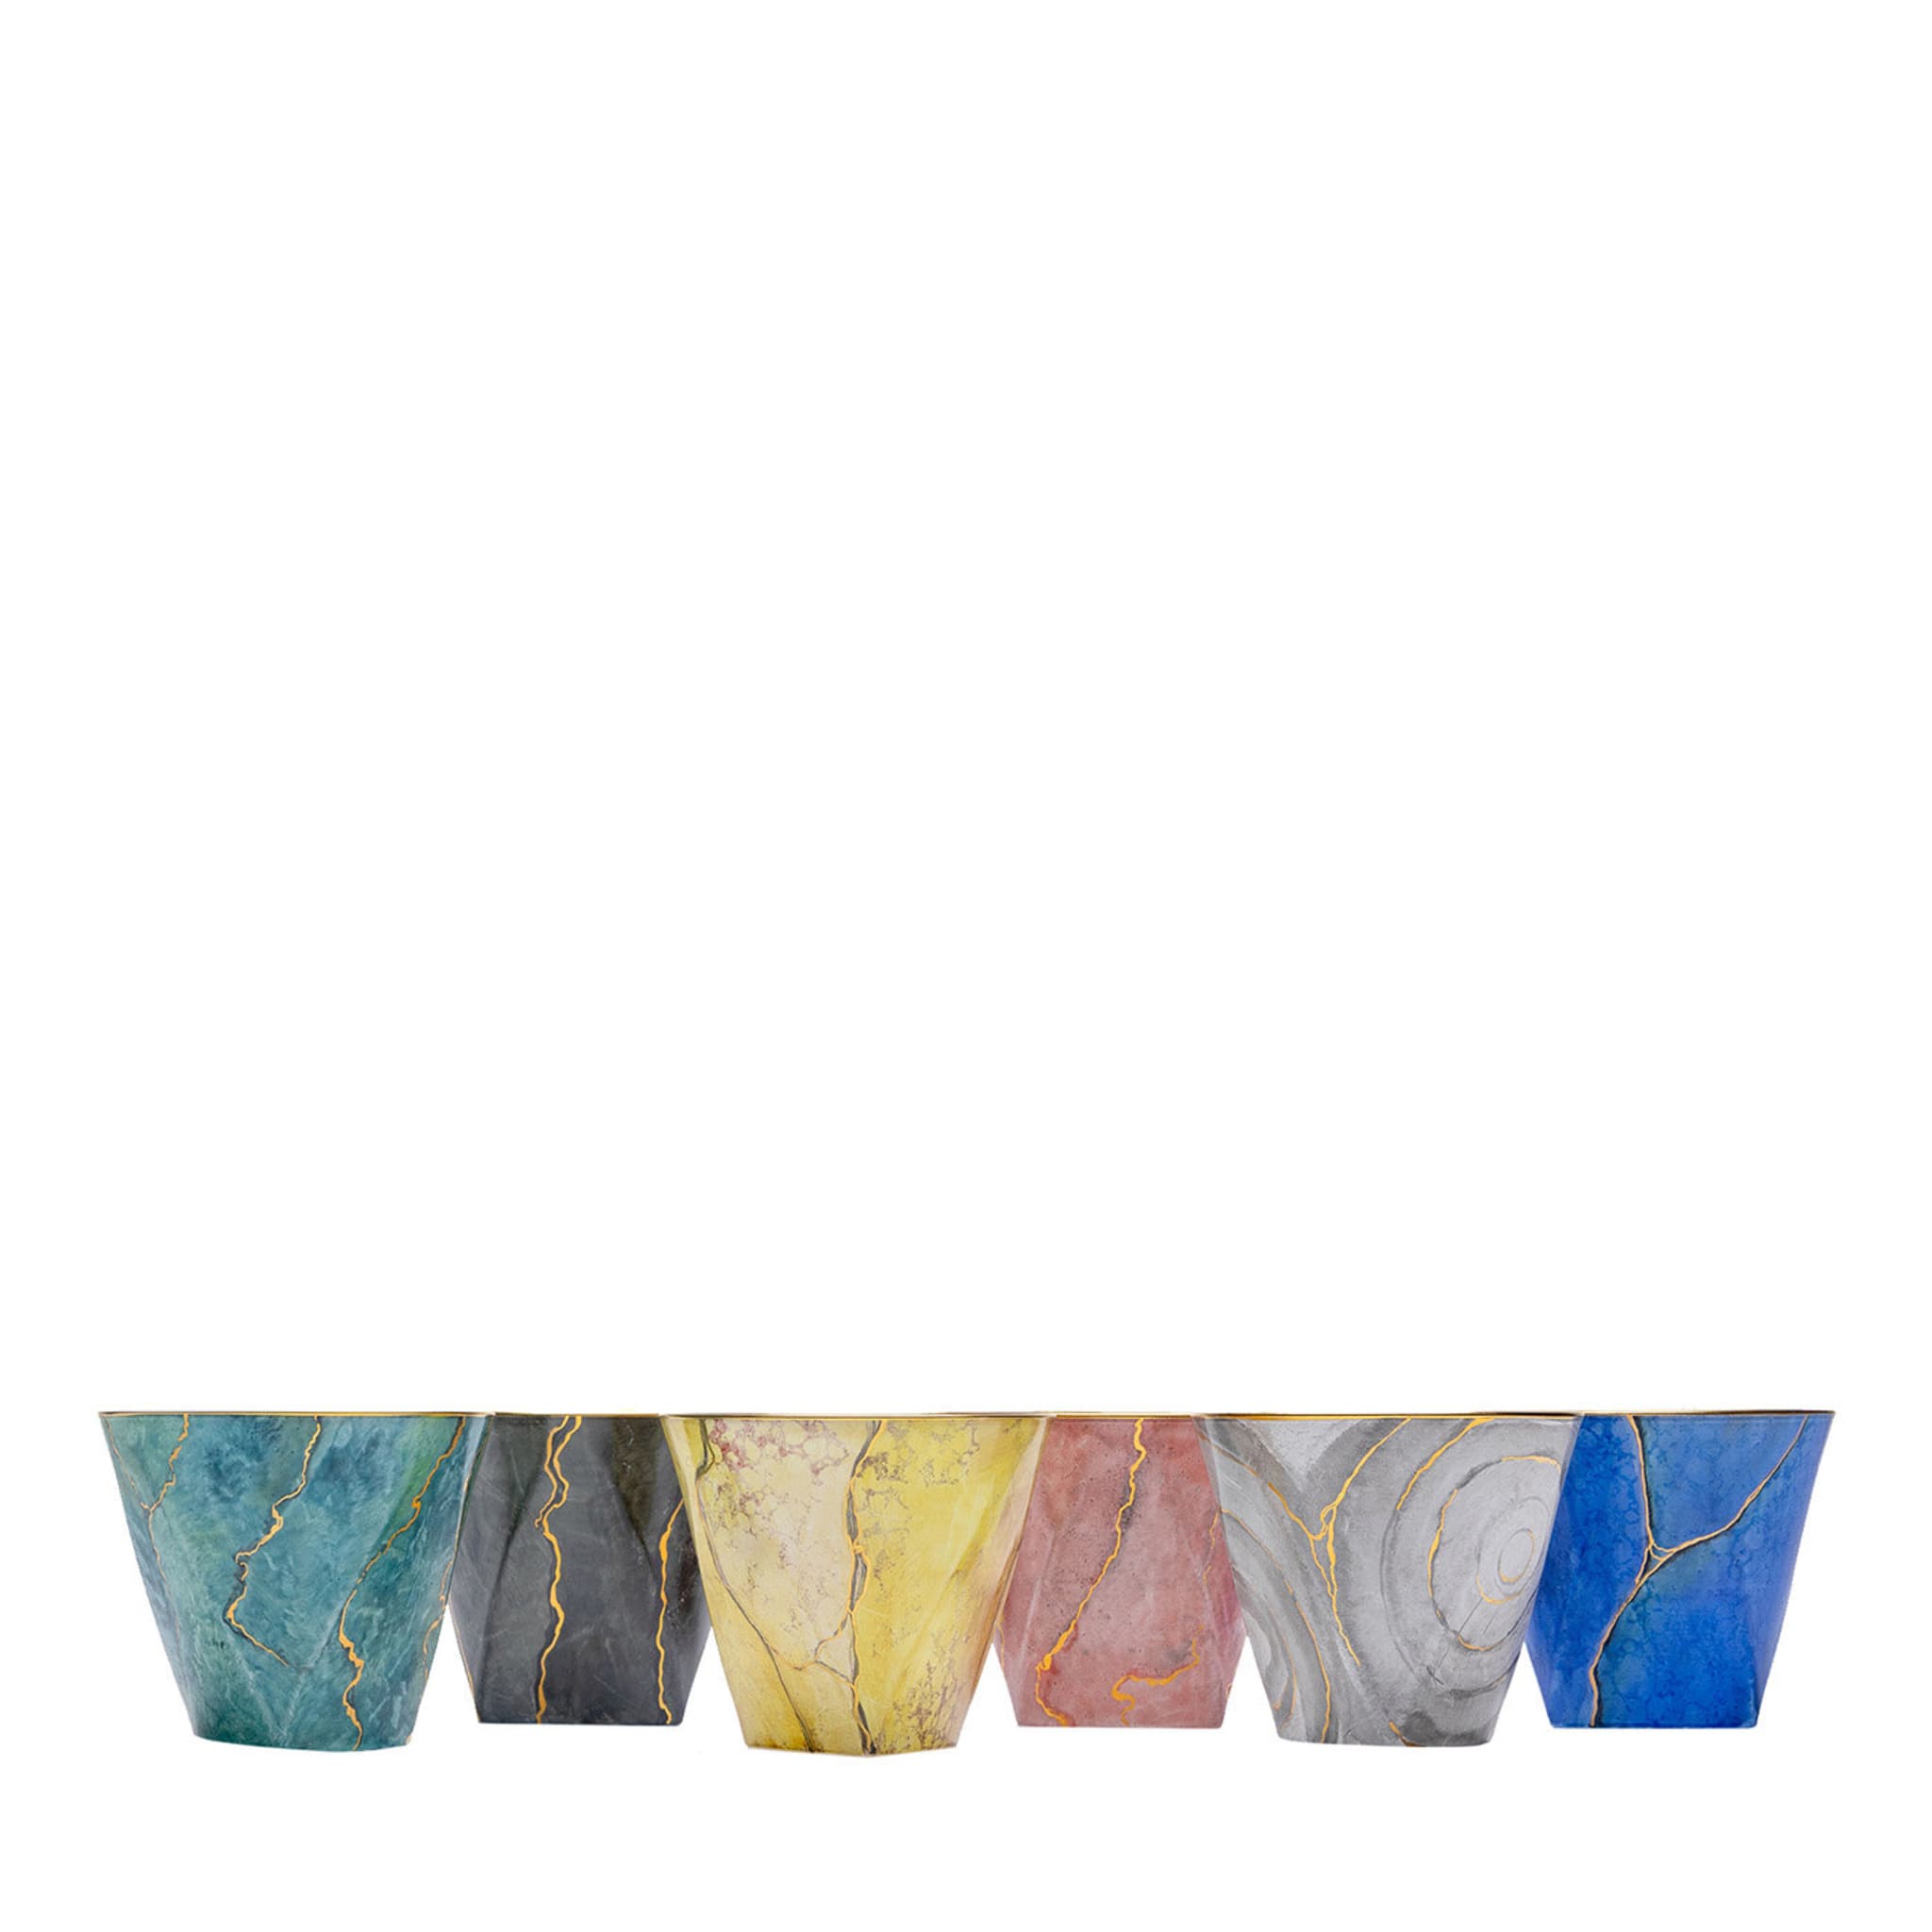 Marmo Jeu de 6 verres multicolores avec or - Vue principale